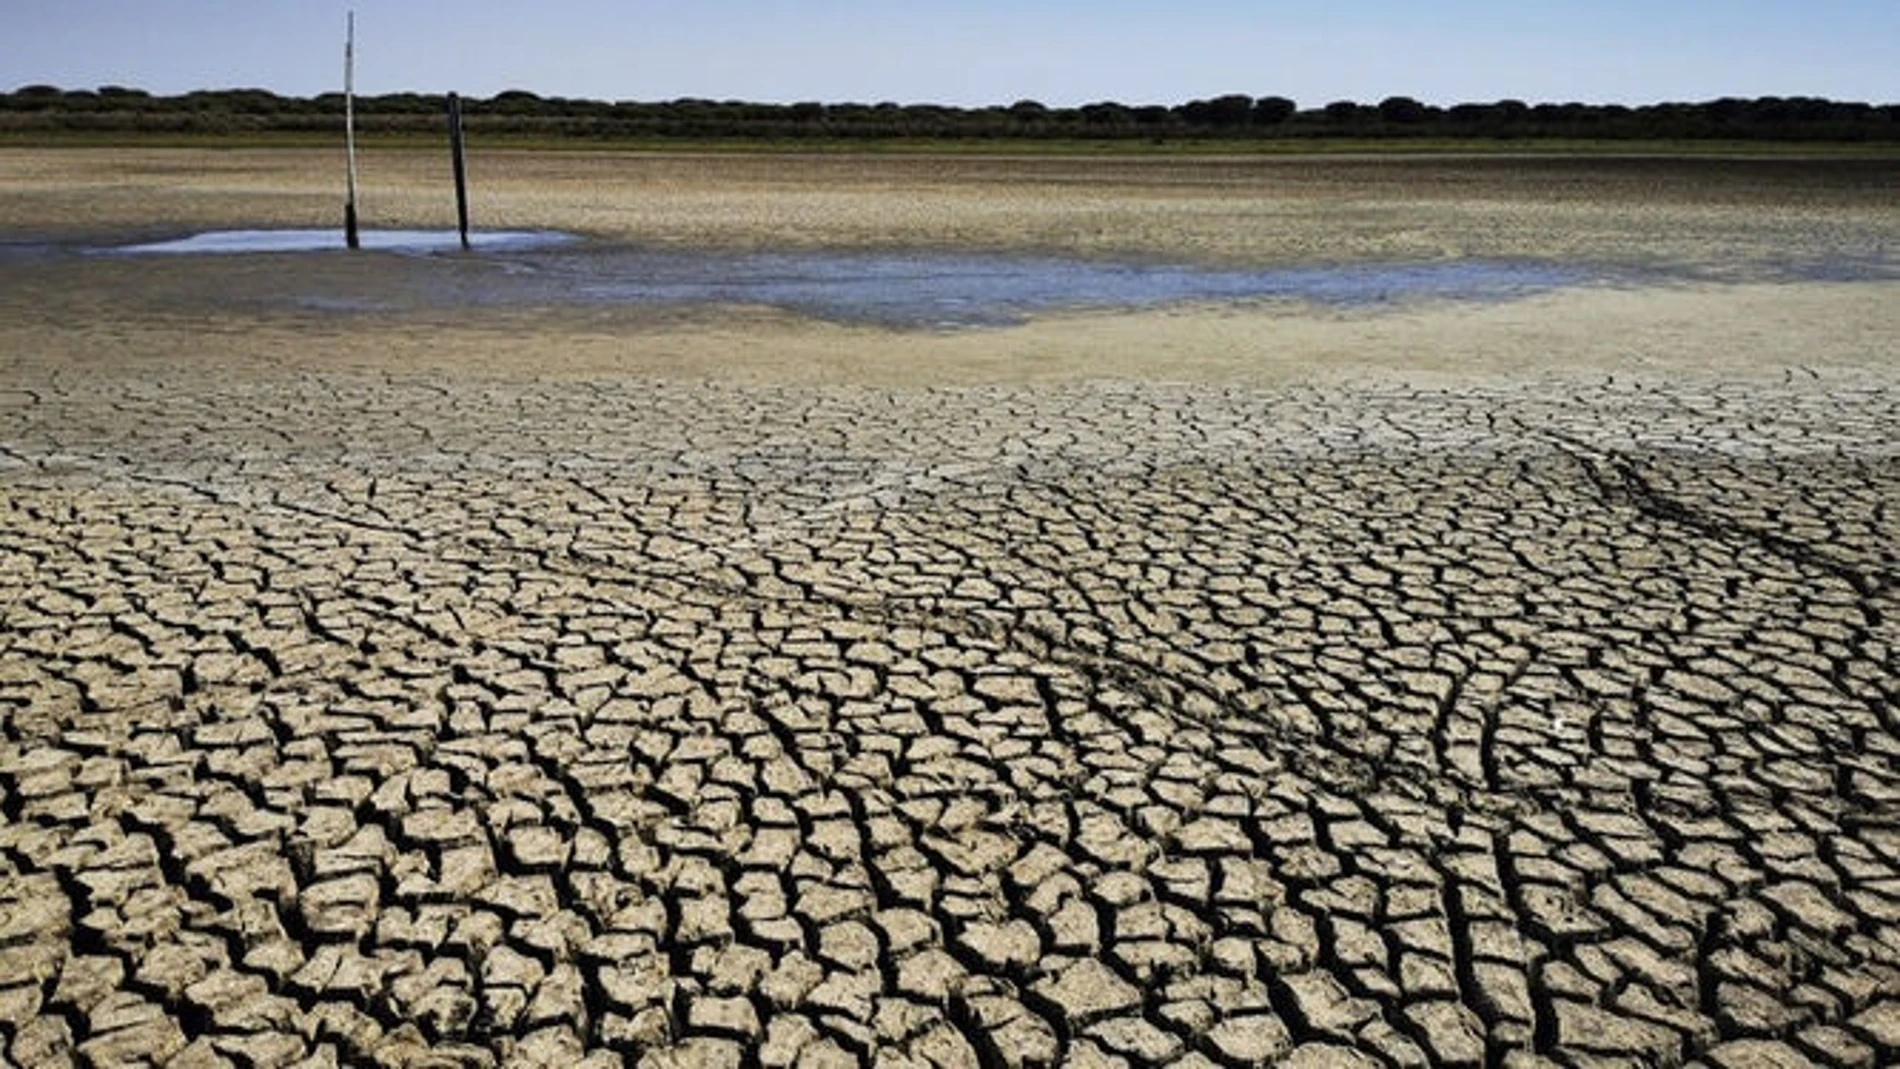 Sequía.- Huelva.- Giahsa aprueba inversiones de emergencia por la sequía tras los cortes en Cumbres Mayores, Cala y Santa Olalla